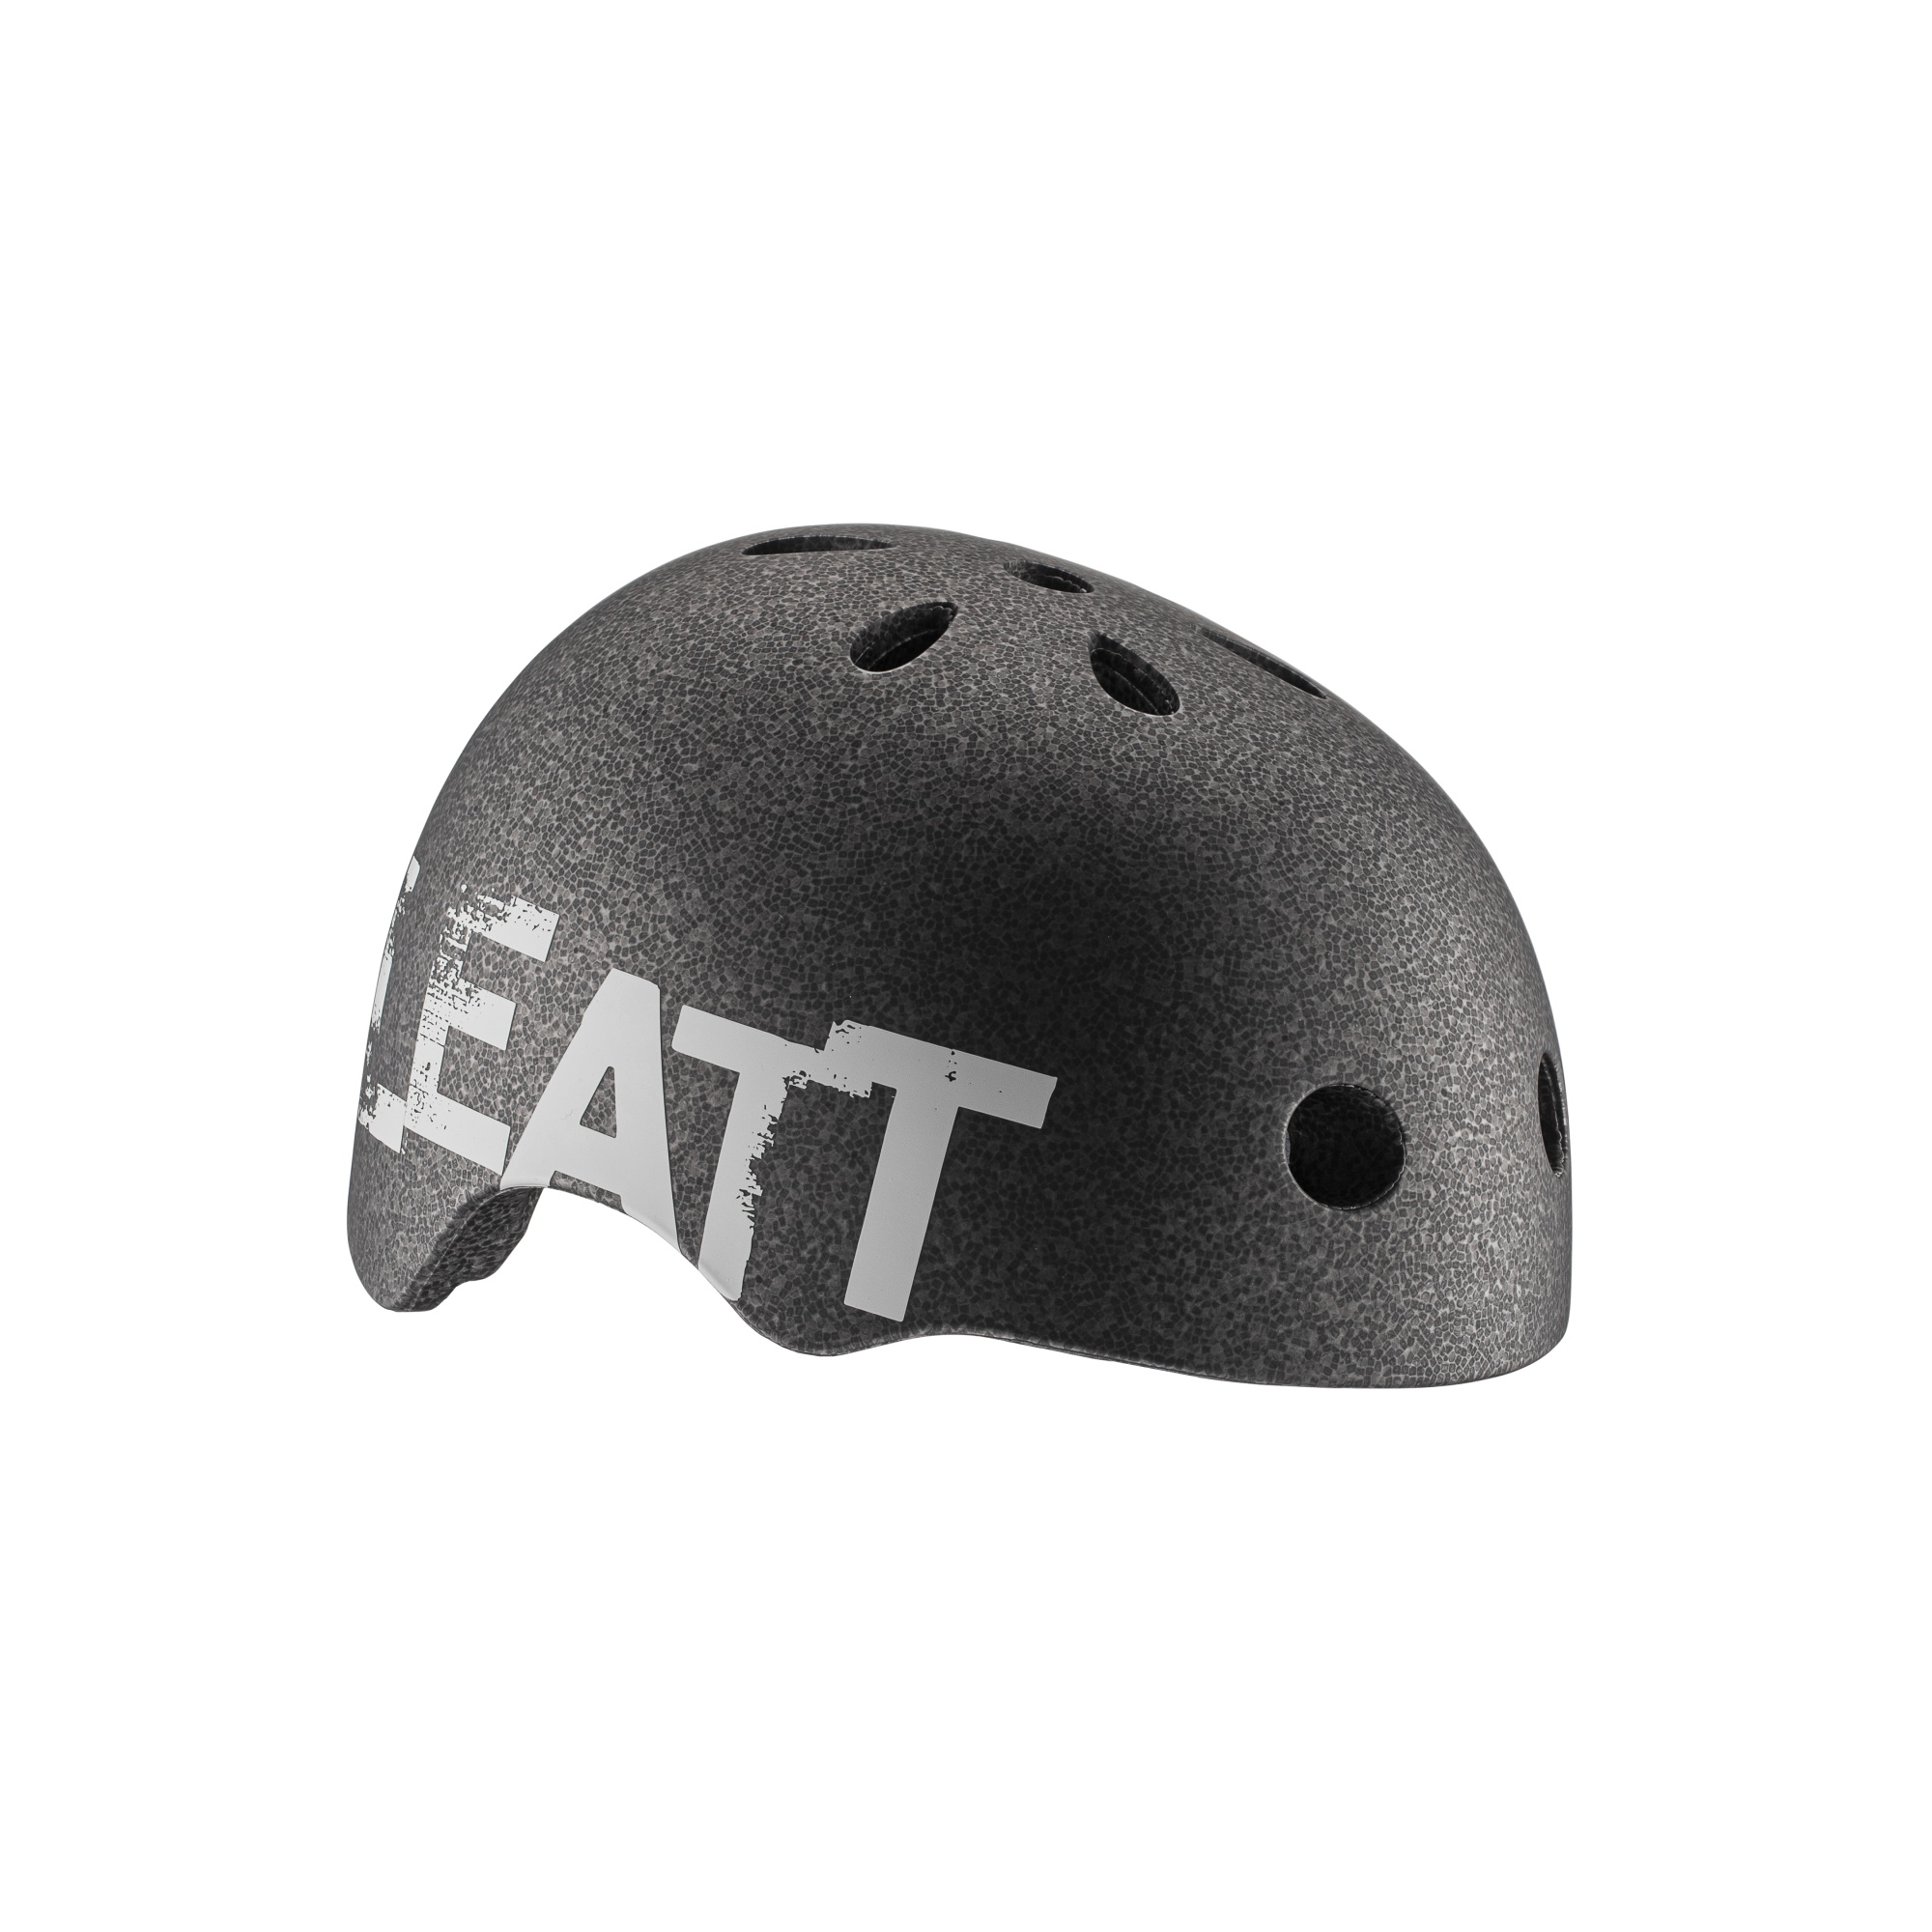 Leatt Helmet Mtb 1.0 Urban V21.2 Black